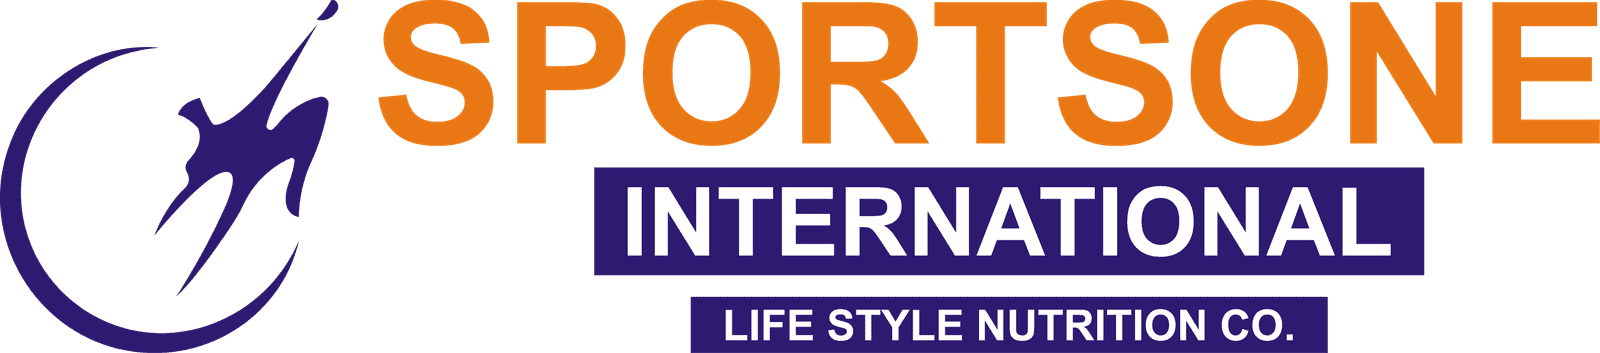 Sportsone International